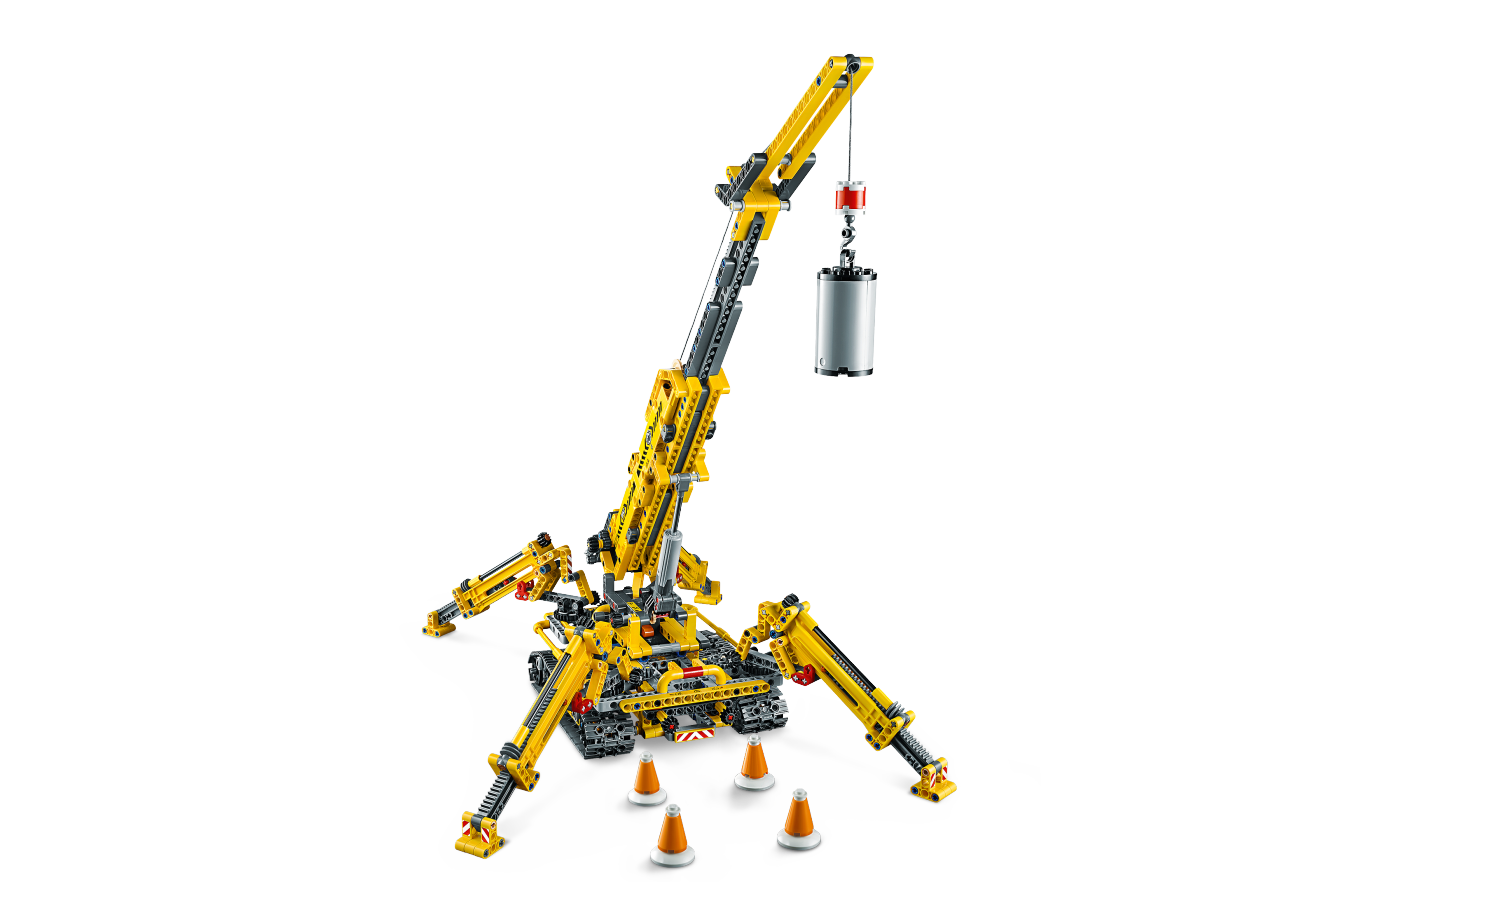 lego compact crawler crane